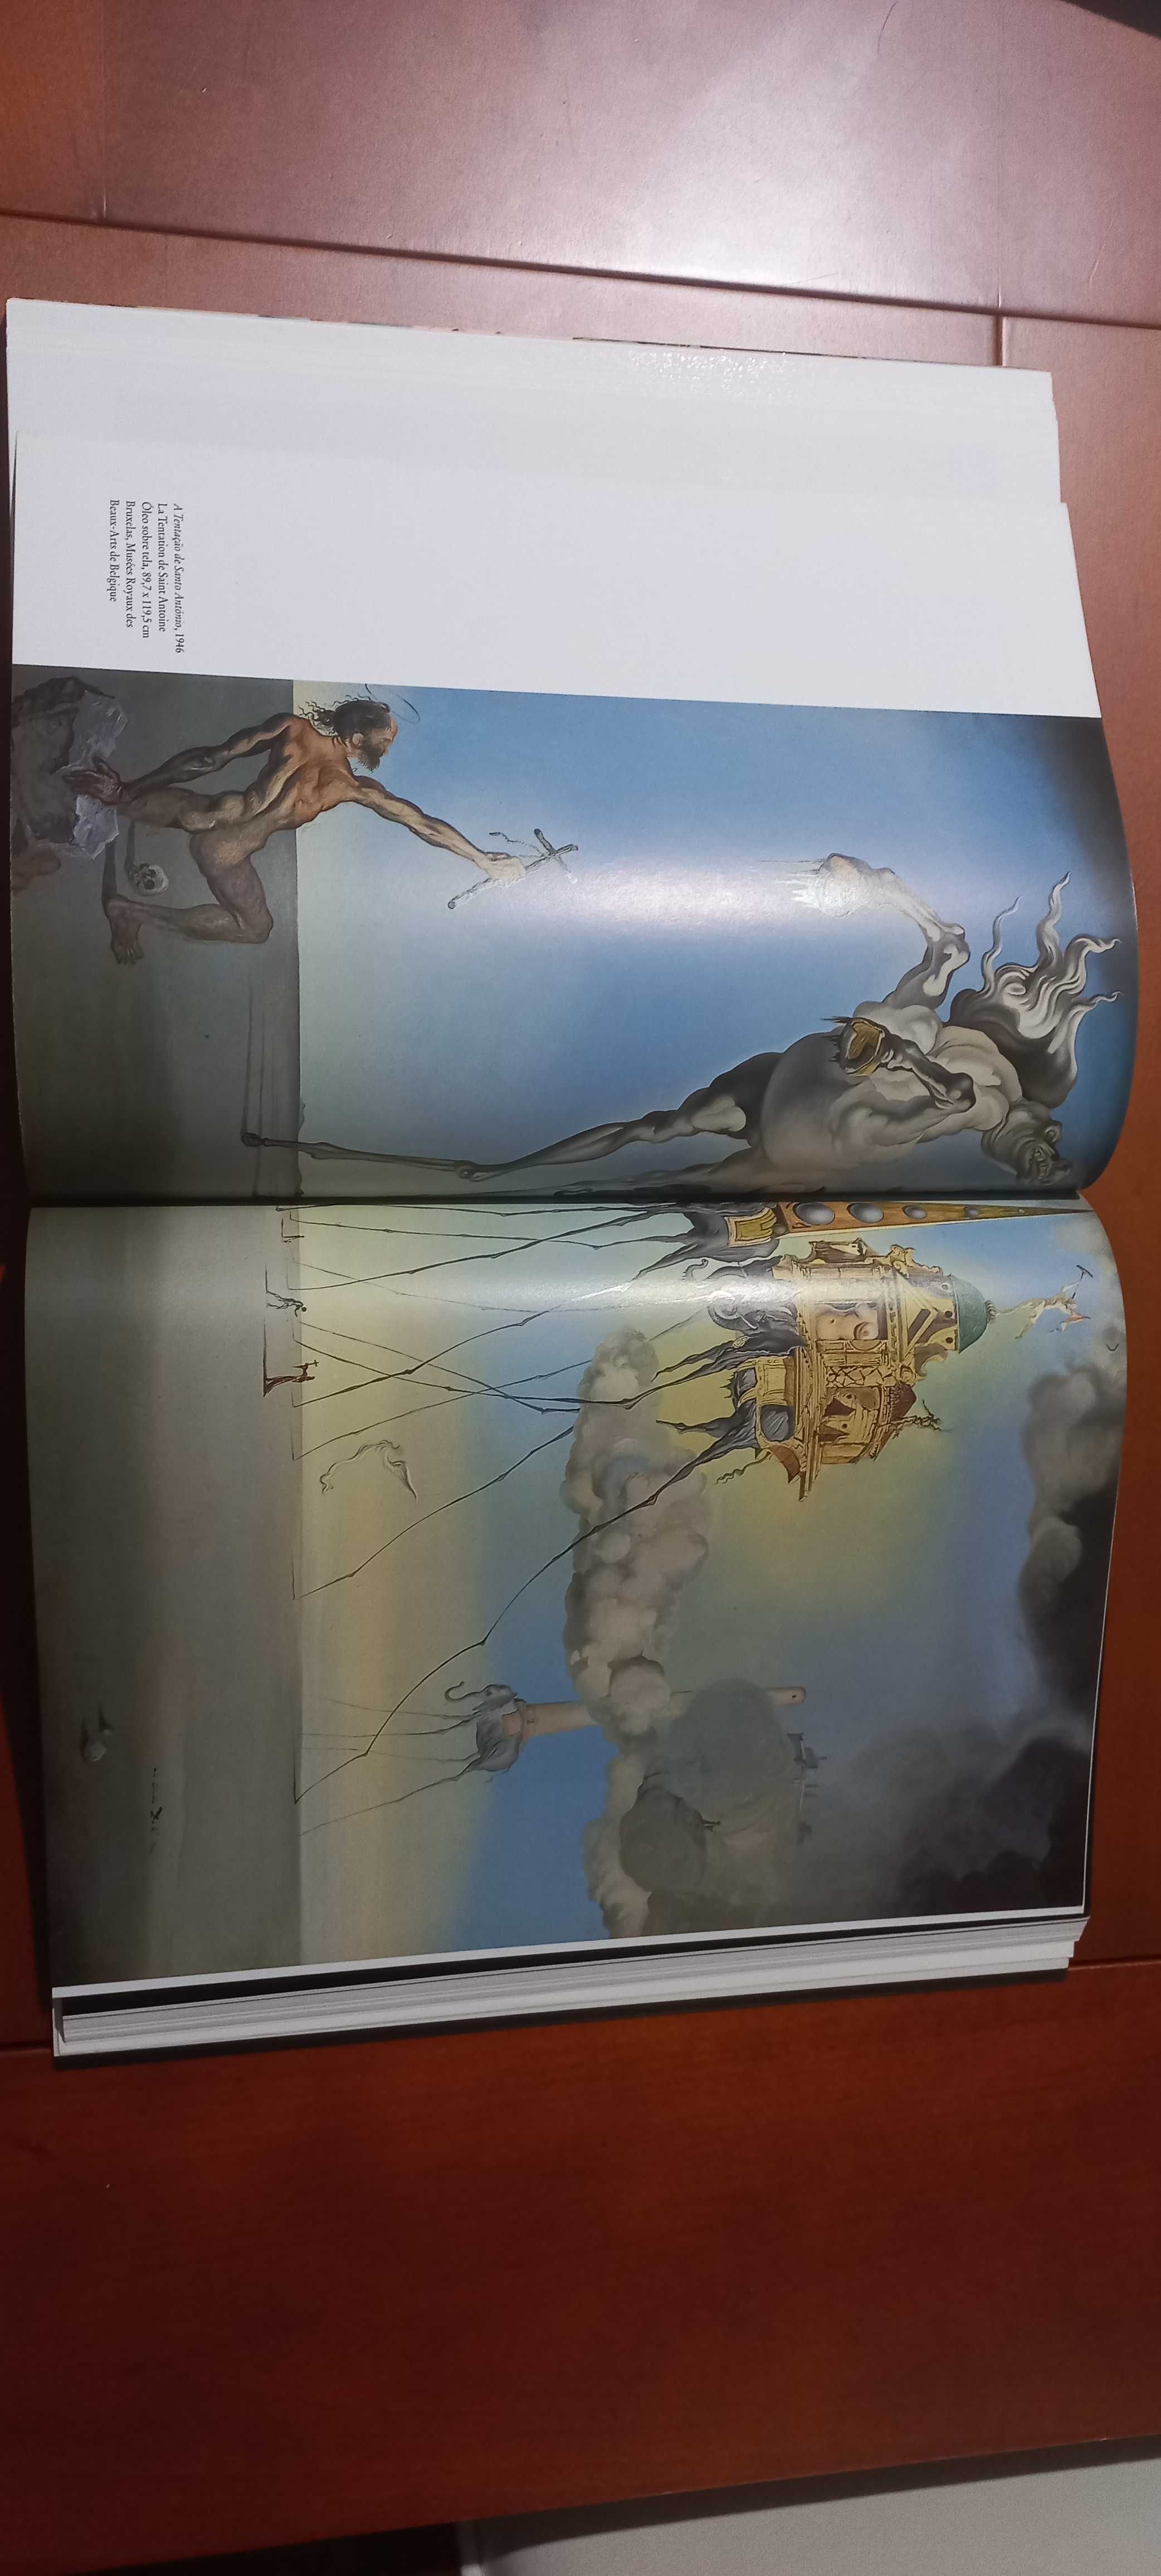 Salvador Dalí - Livro